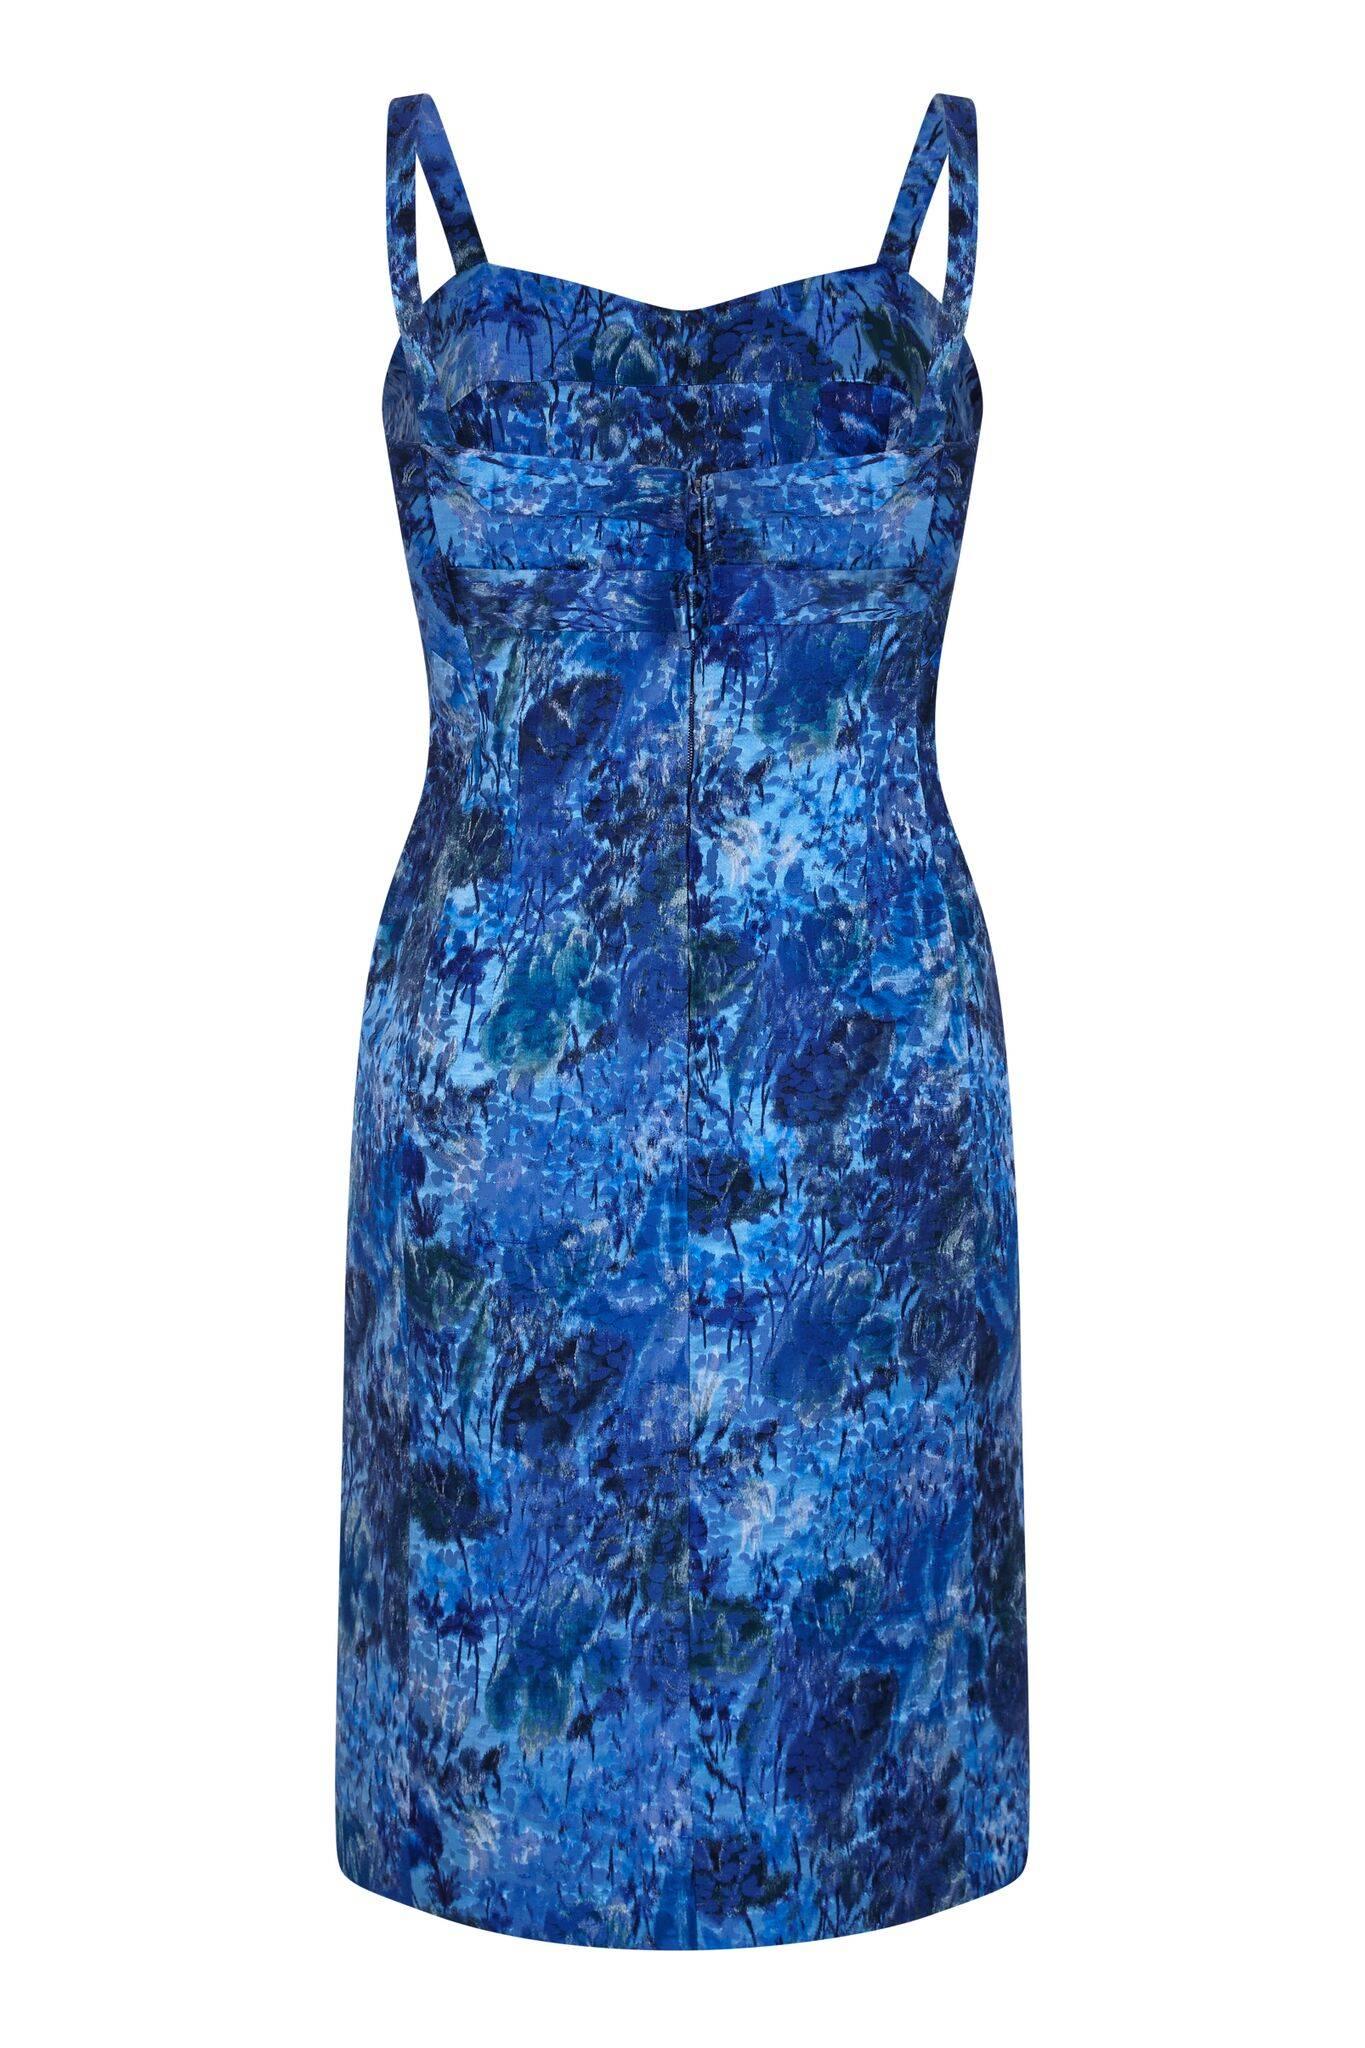 Cette pièce impeccable de la Couture française des années 1960, sans étiquette, en tissu de soie texturé, est d'une construction exquise. Le doux motif floral abstrait en bleu cobalt, outremer, turquoise, marine et vert forêt est légèrement gaufré